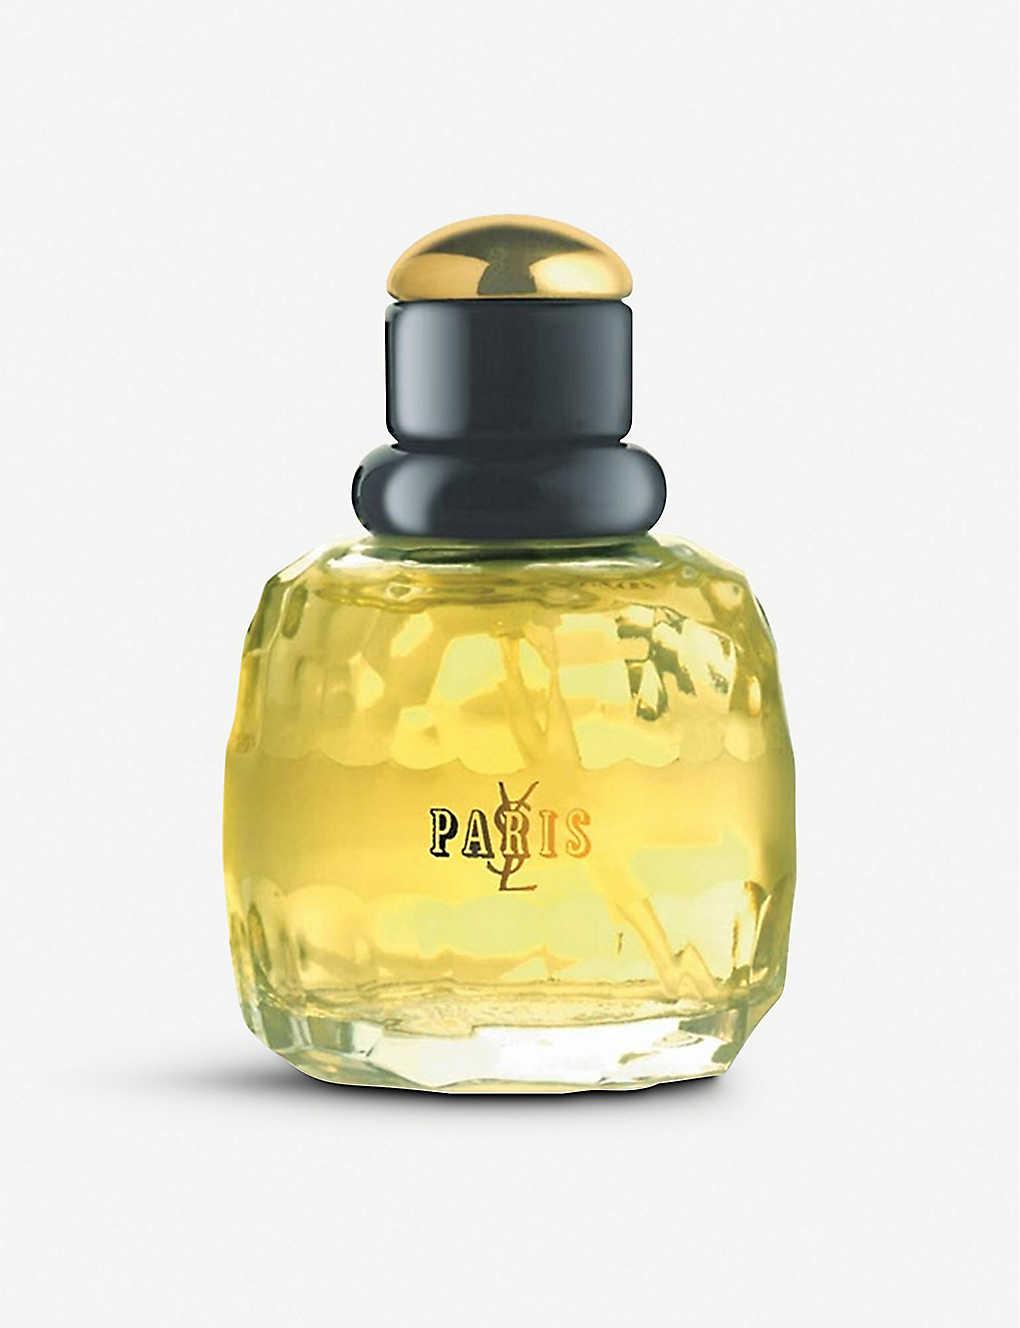 Yves Saint Laurent Paris Eau De Parfum 75ml